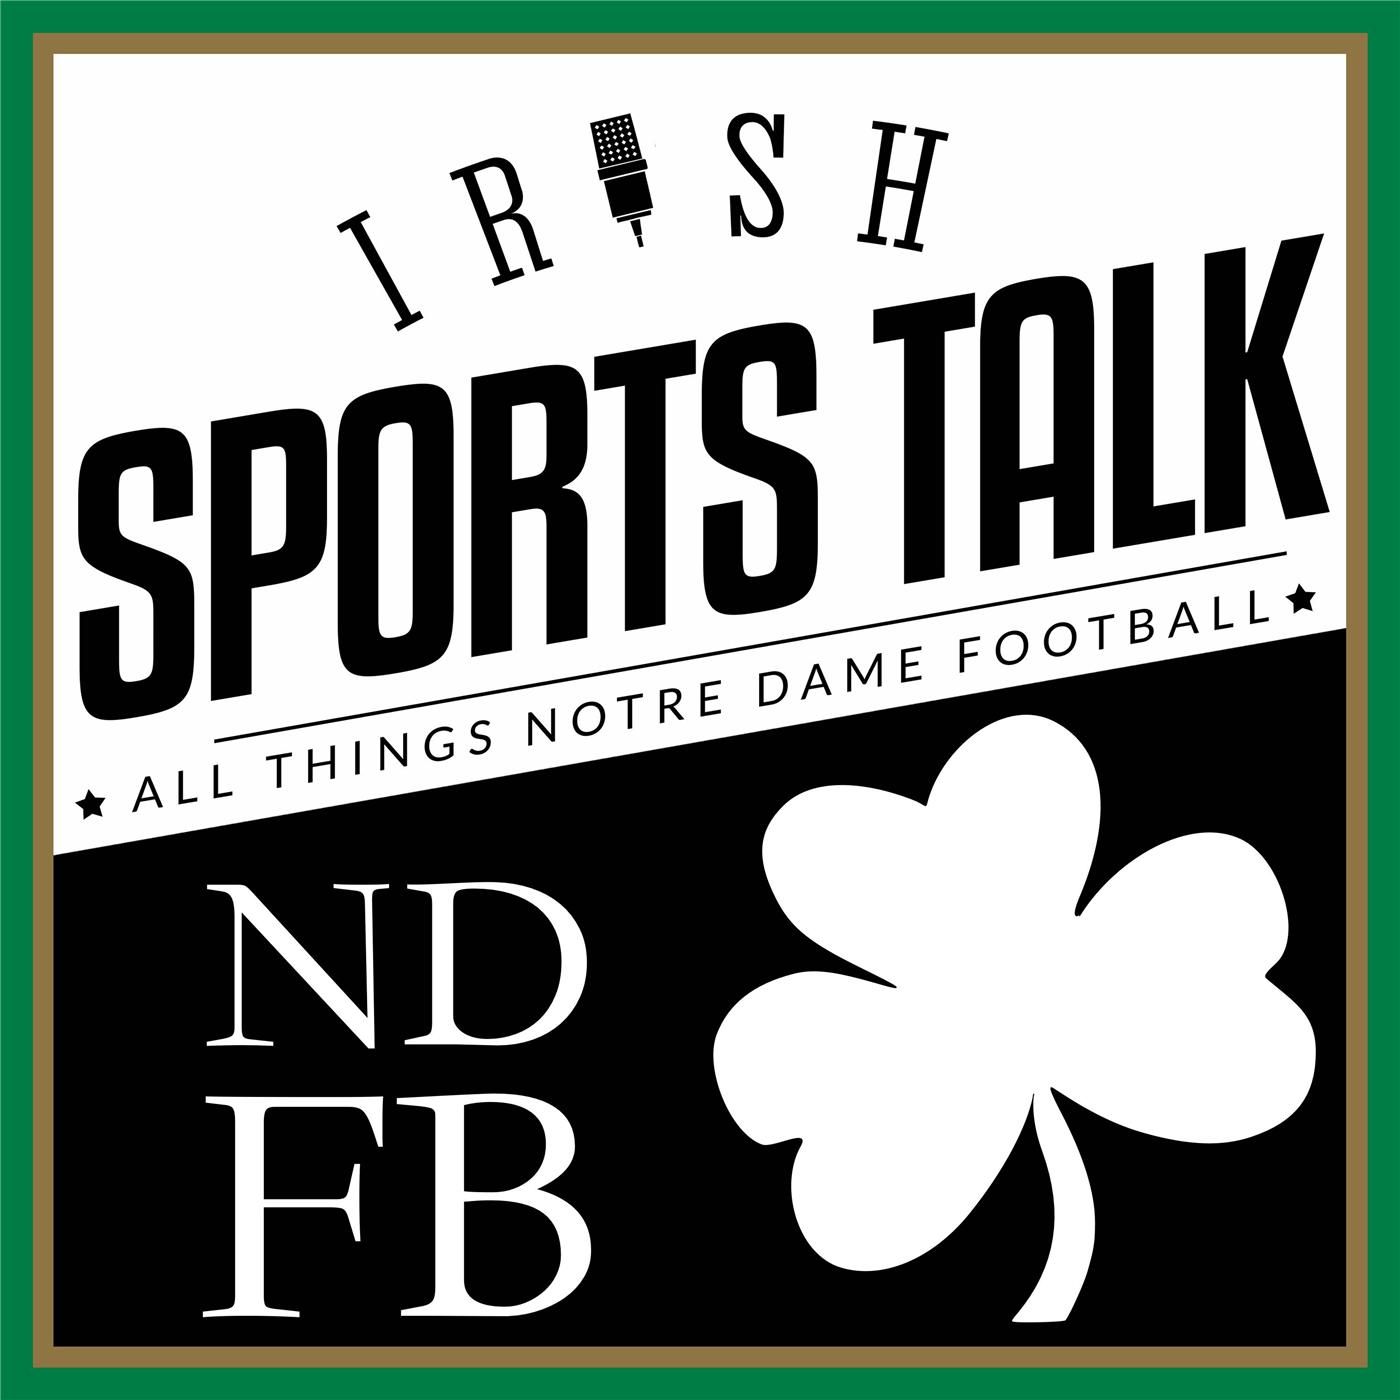 about irish sports daily